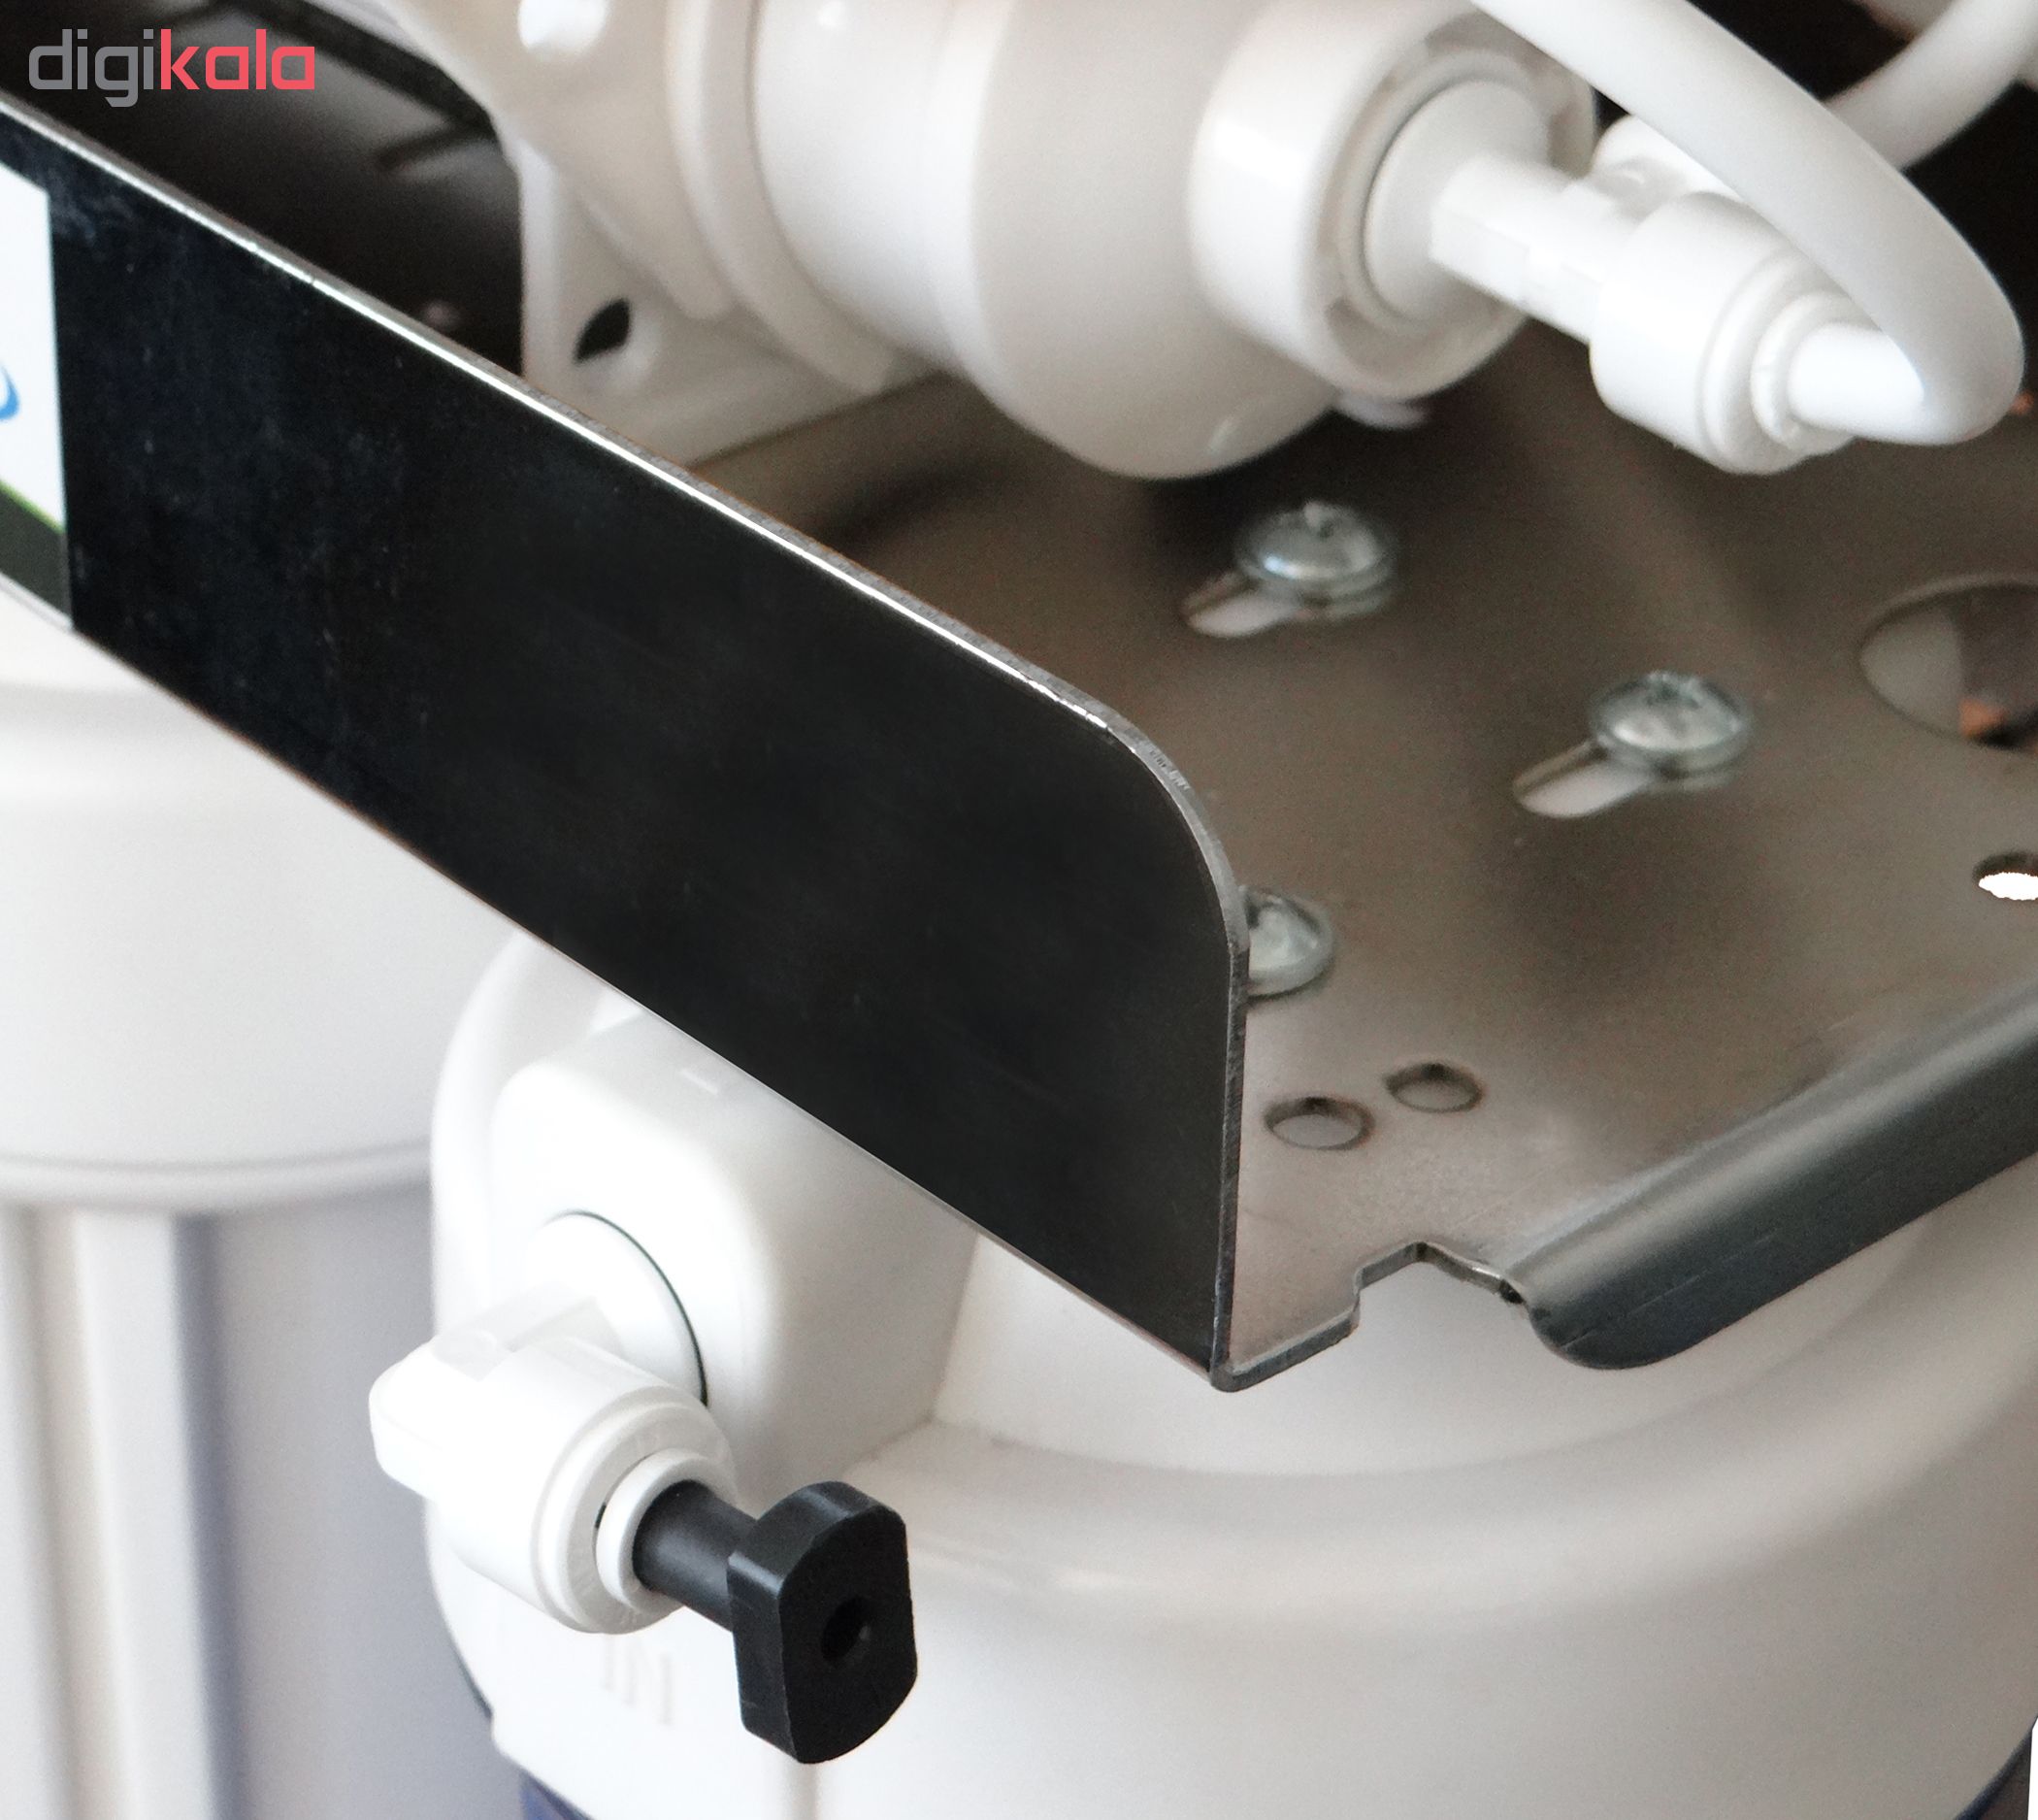 دستگاه تصفیه کننده آب آکوآ اسپرینگ مدل CHROME-XN9